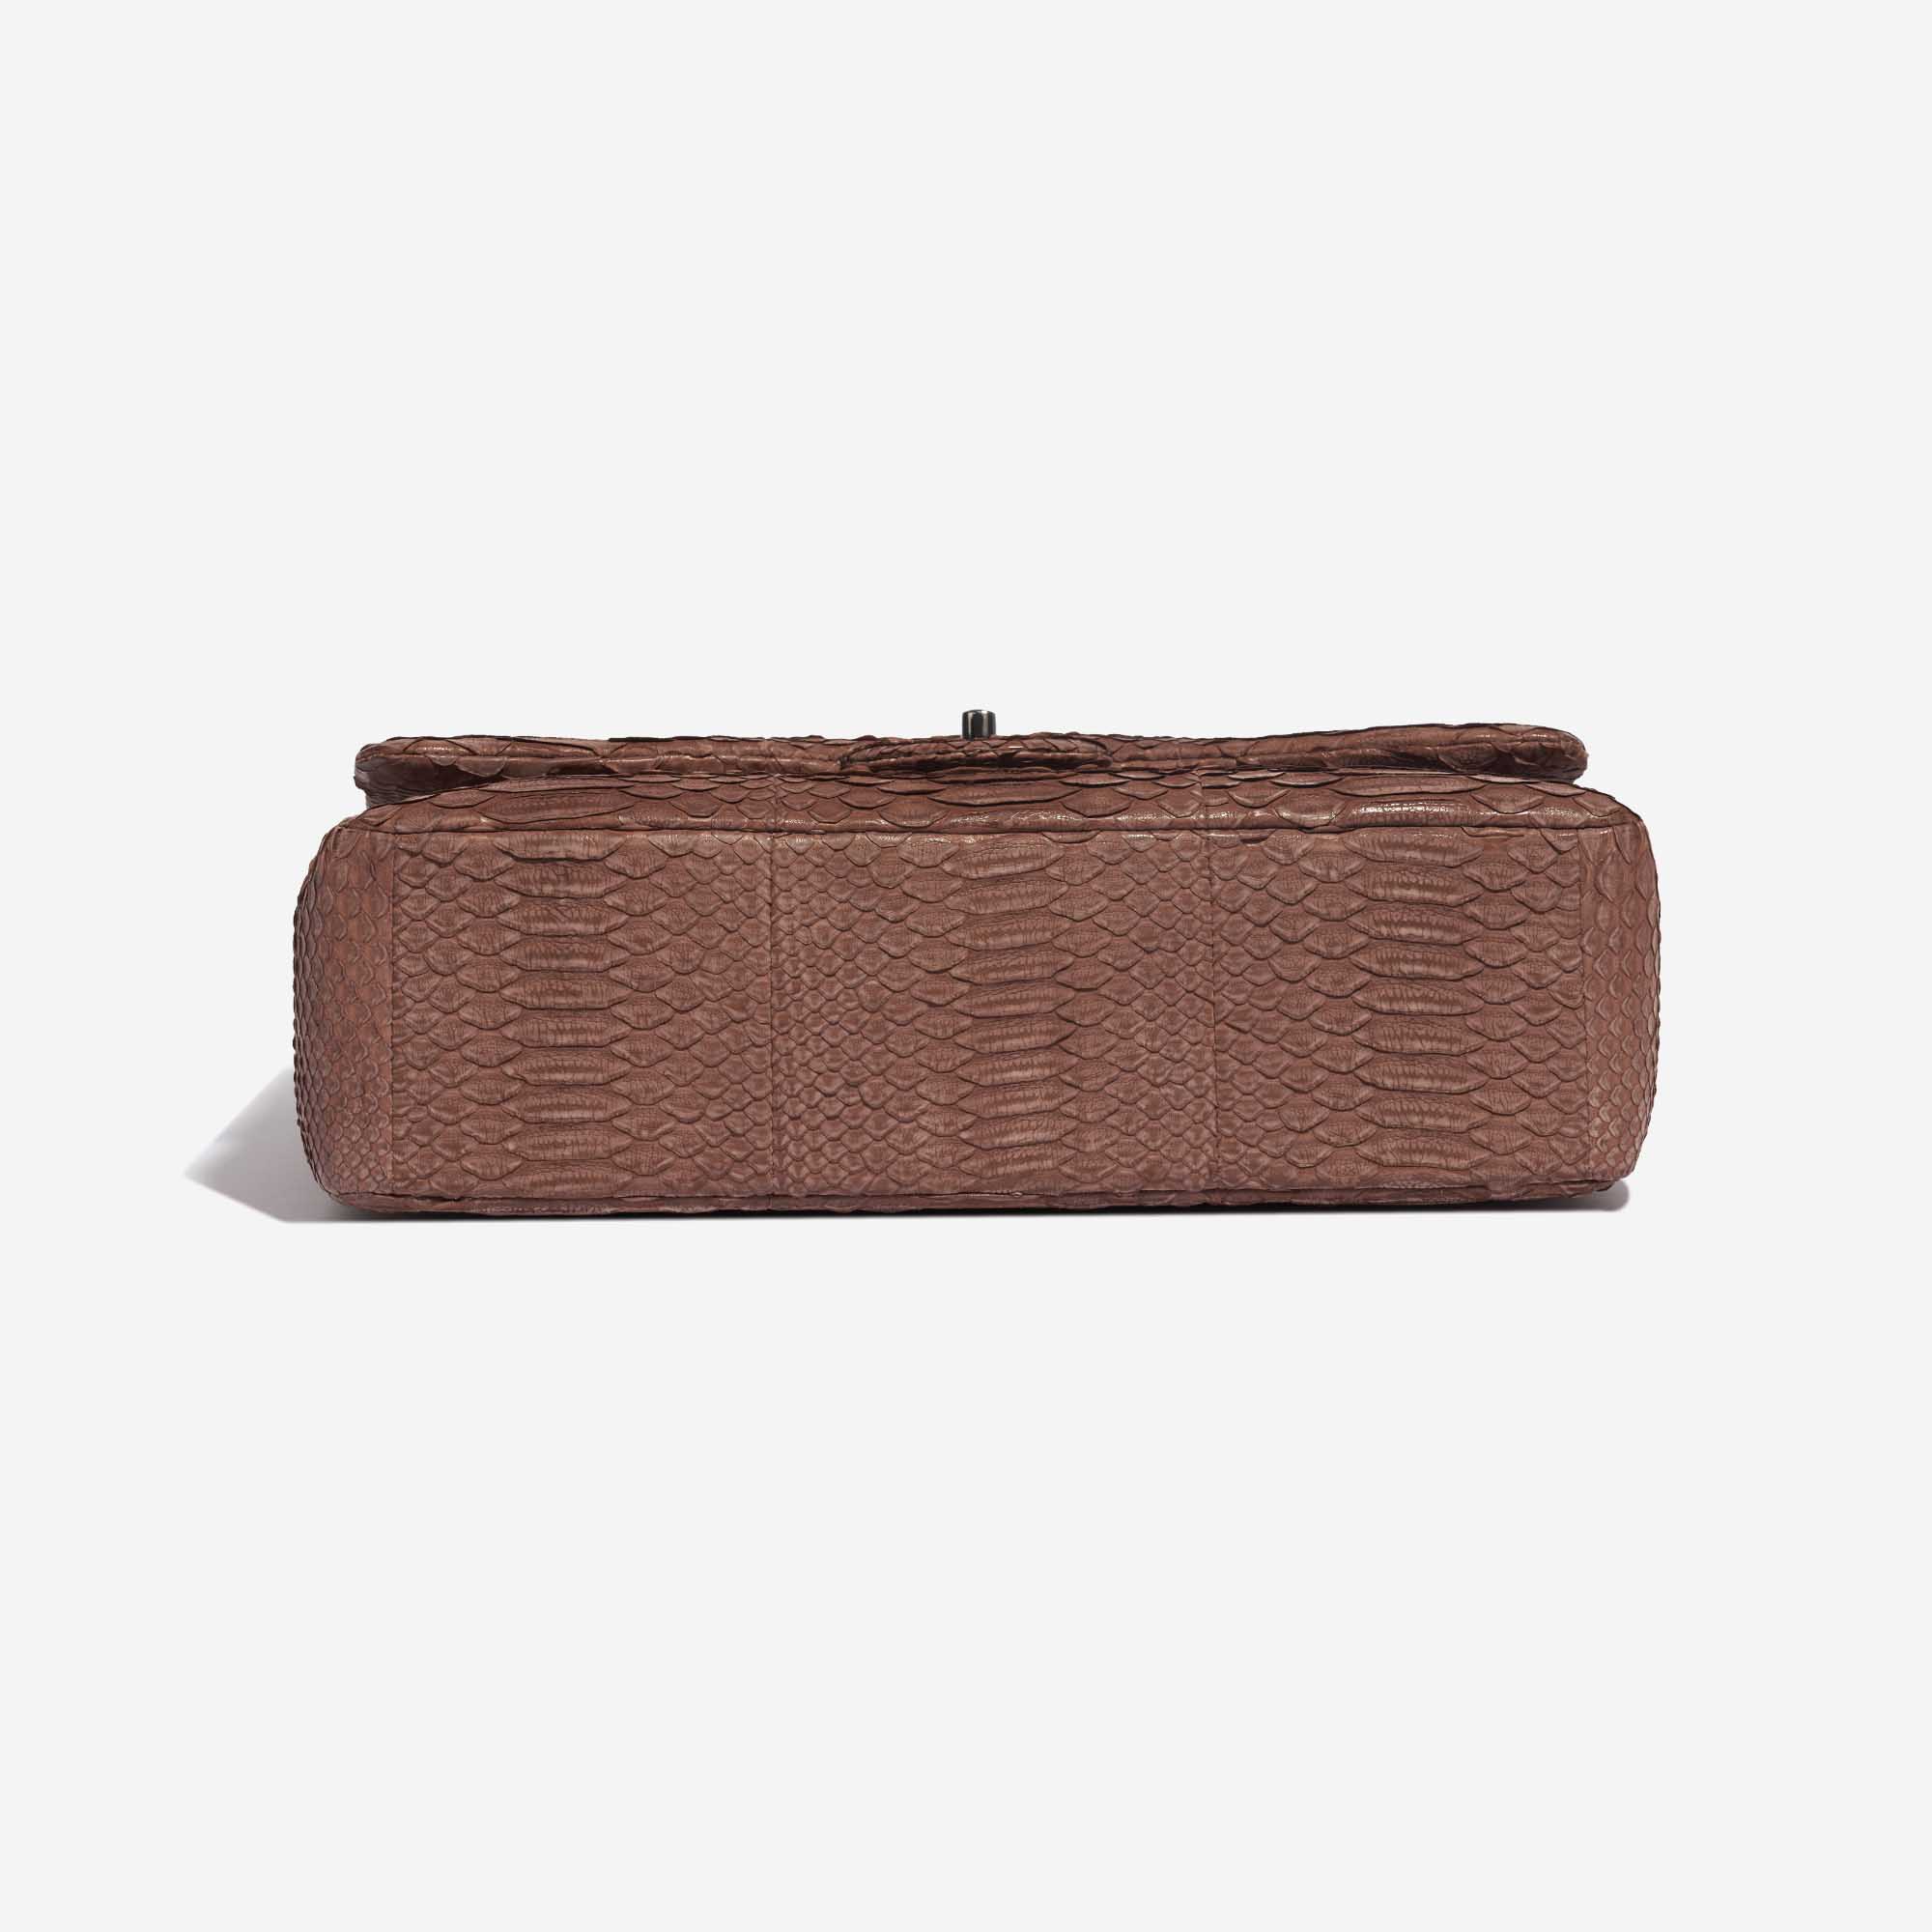 Pre-owned Chanel Tasche Timeless Maxi Python Brown Brown Bottom | Verkaufen Sie Ihre Designer-Tasche auf Saclab.com